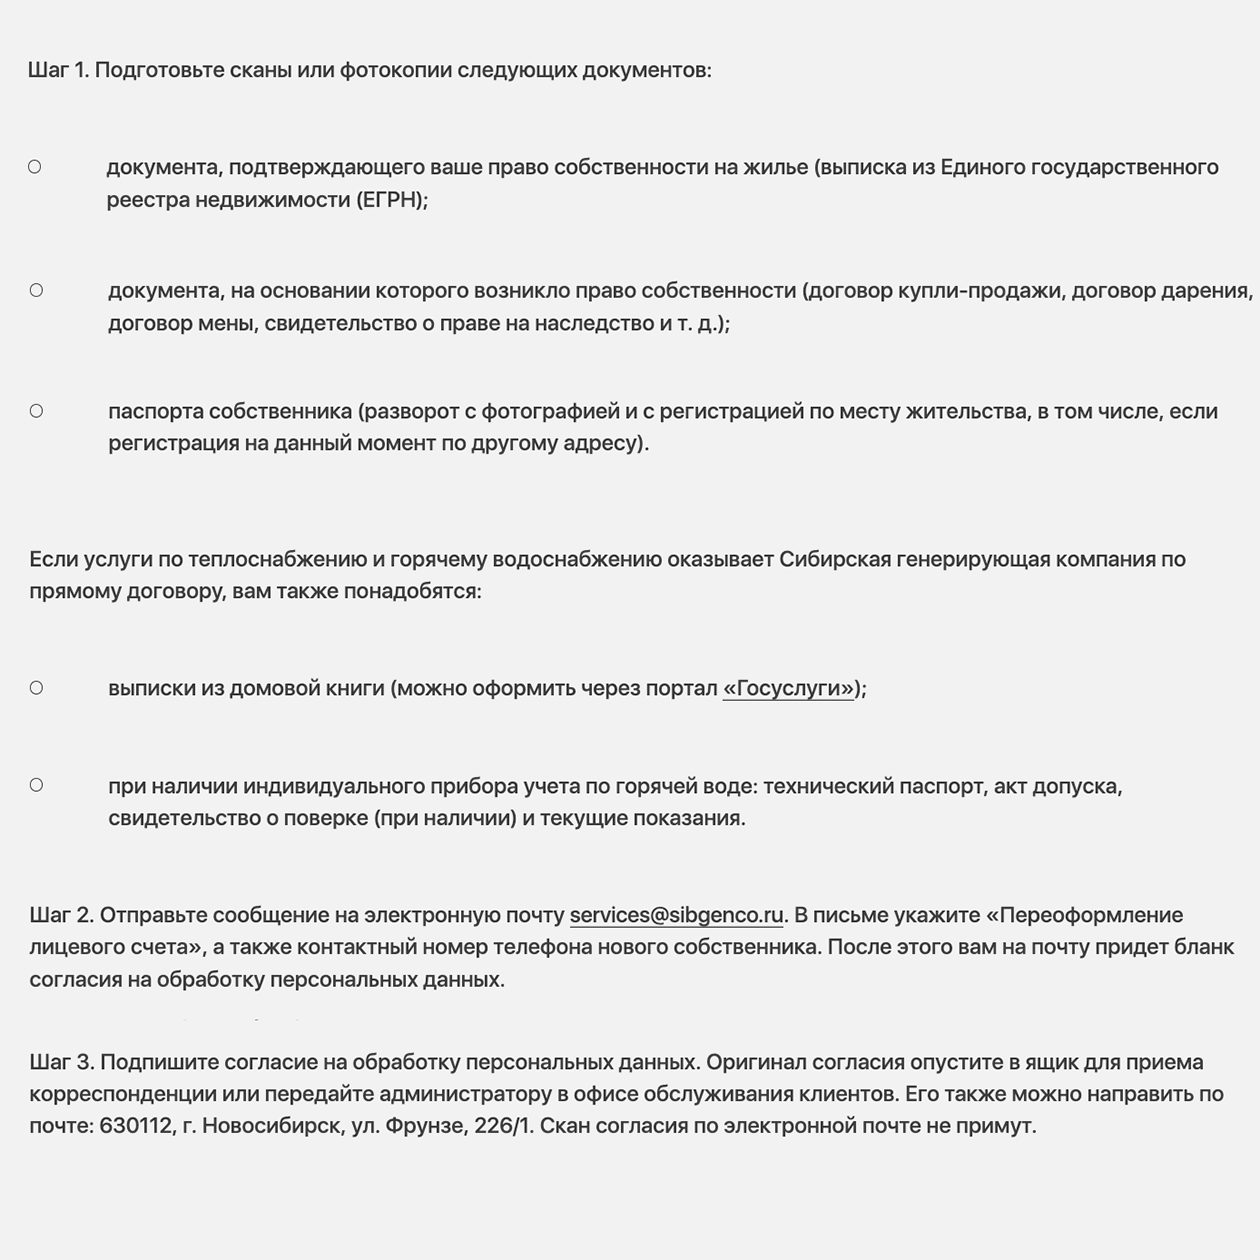 «Сибирская генерирующая компания», которая подает тепло в Новосибирске, принимает документы на переоформление счетов по электронной почте